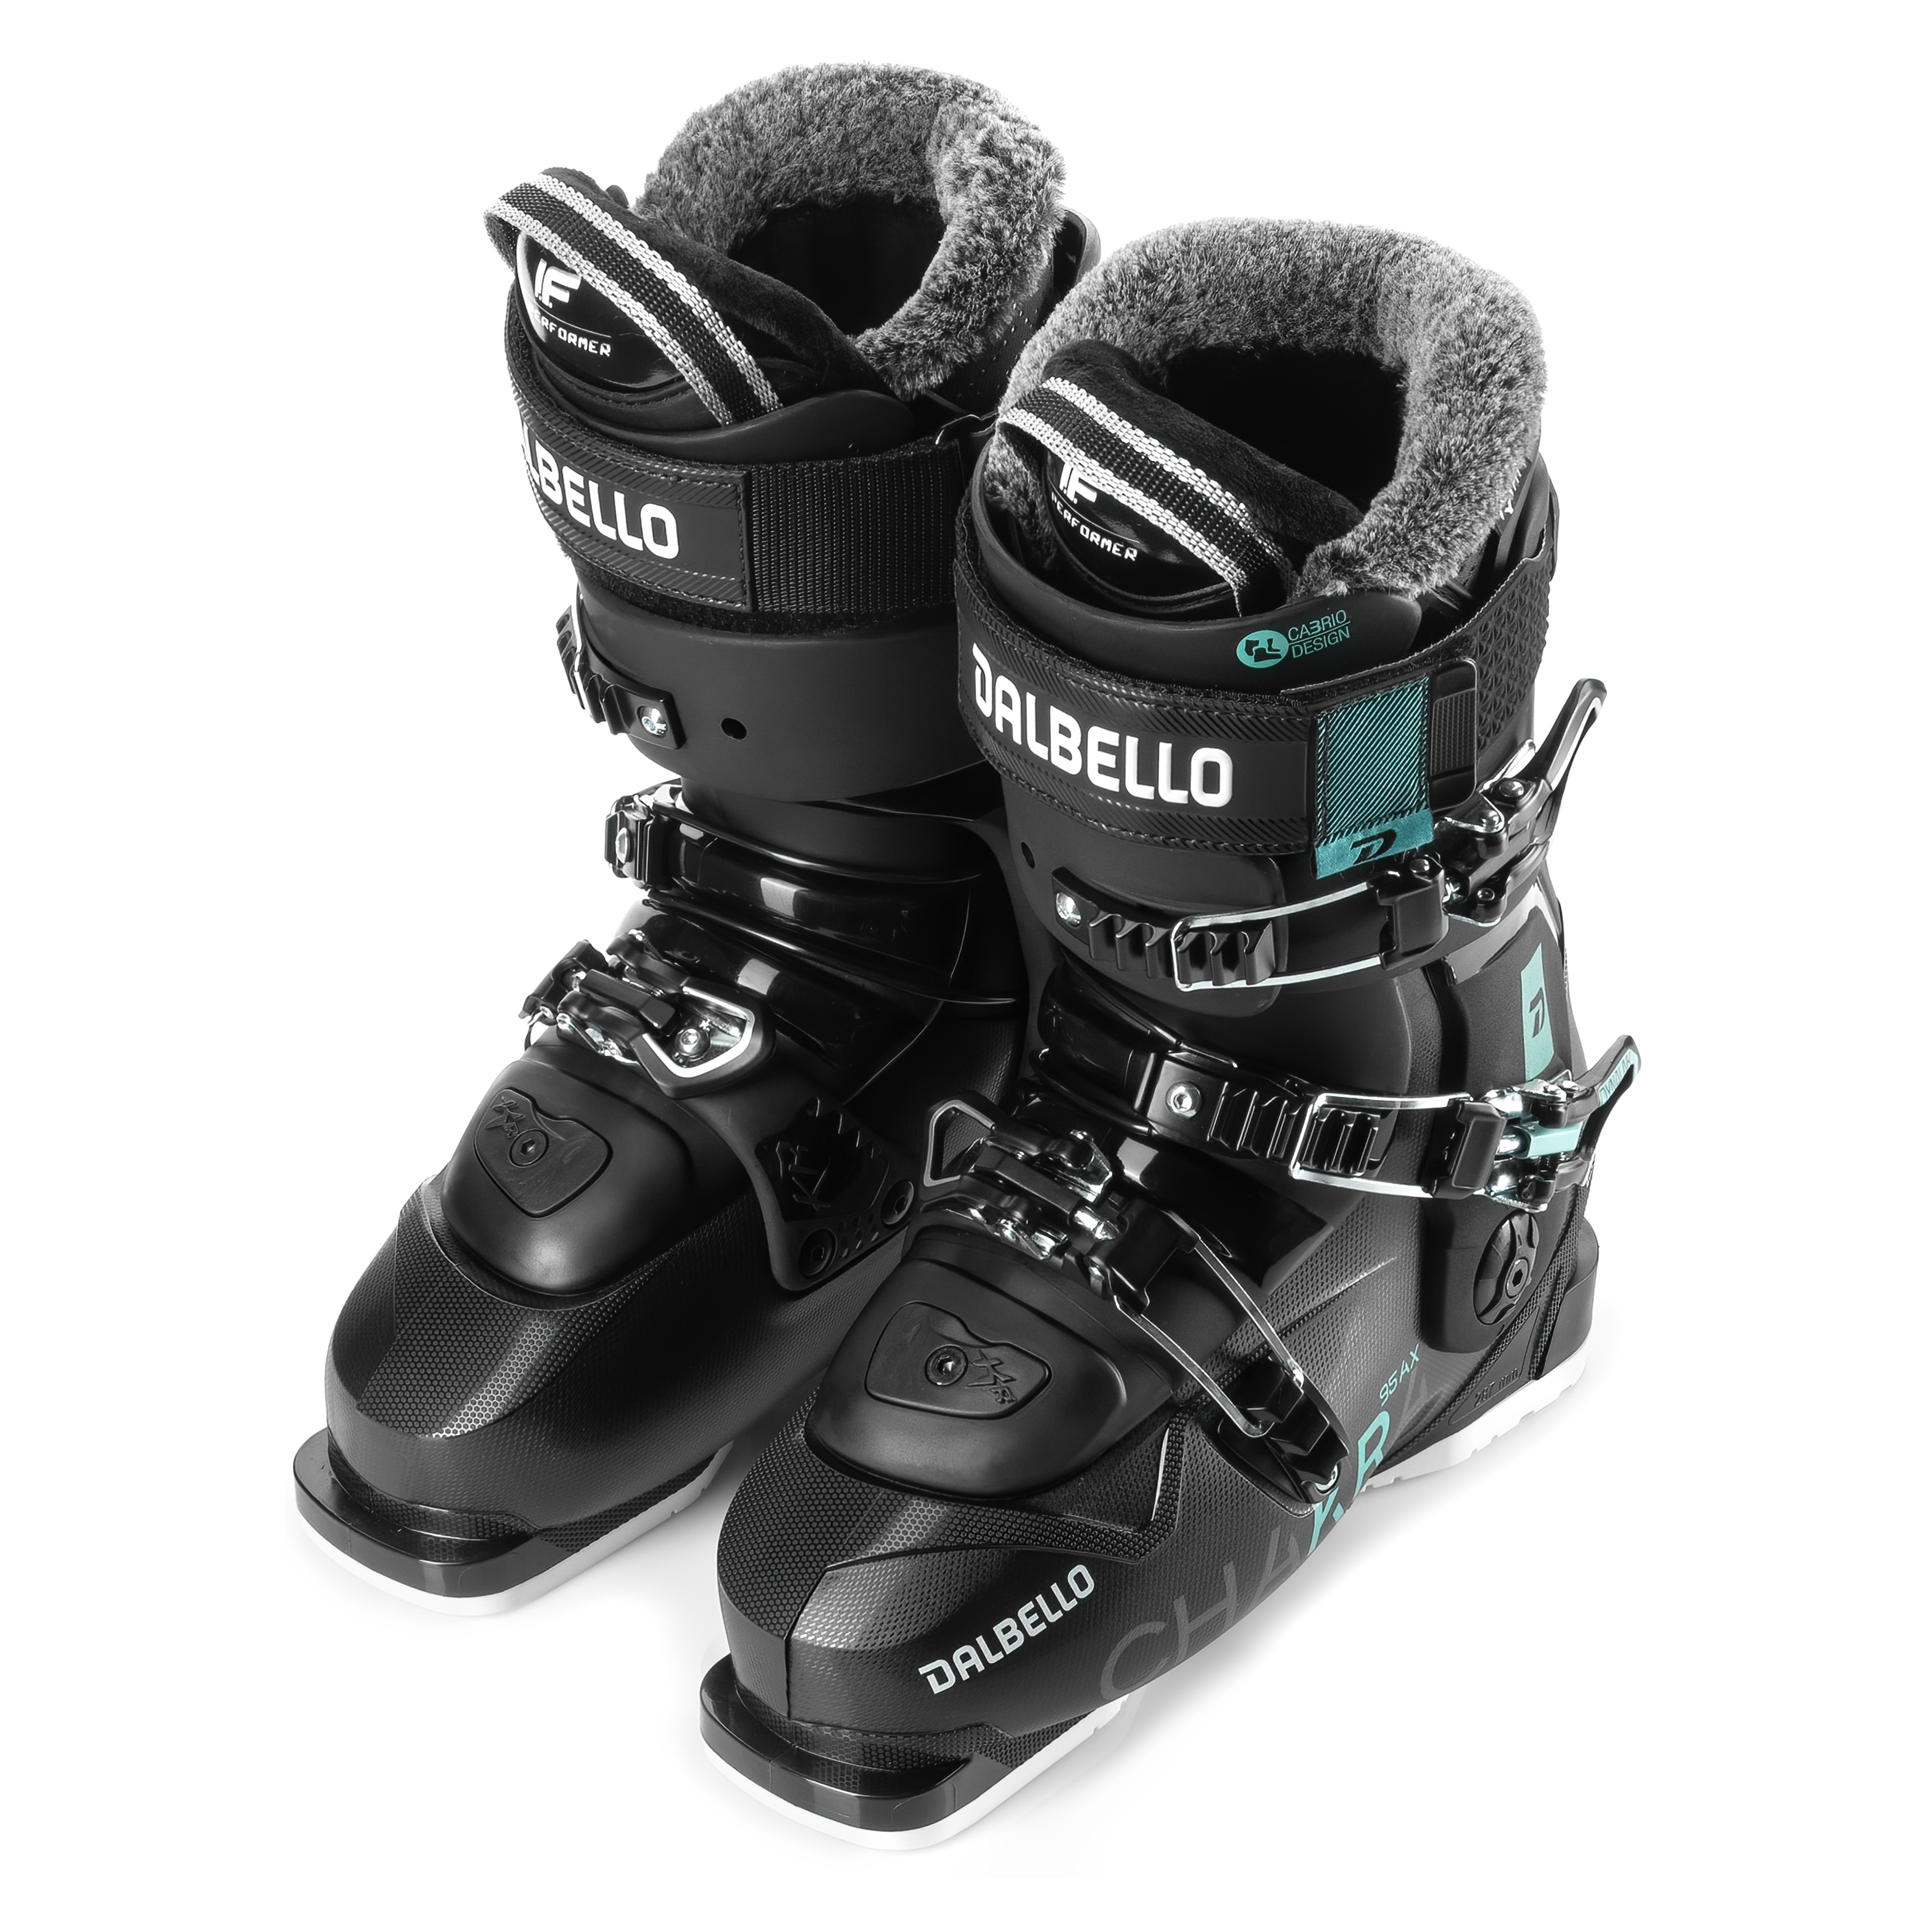 Характеристики универсальные лыжные ботинки Dalbello Chakra AX 95 Black (255)